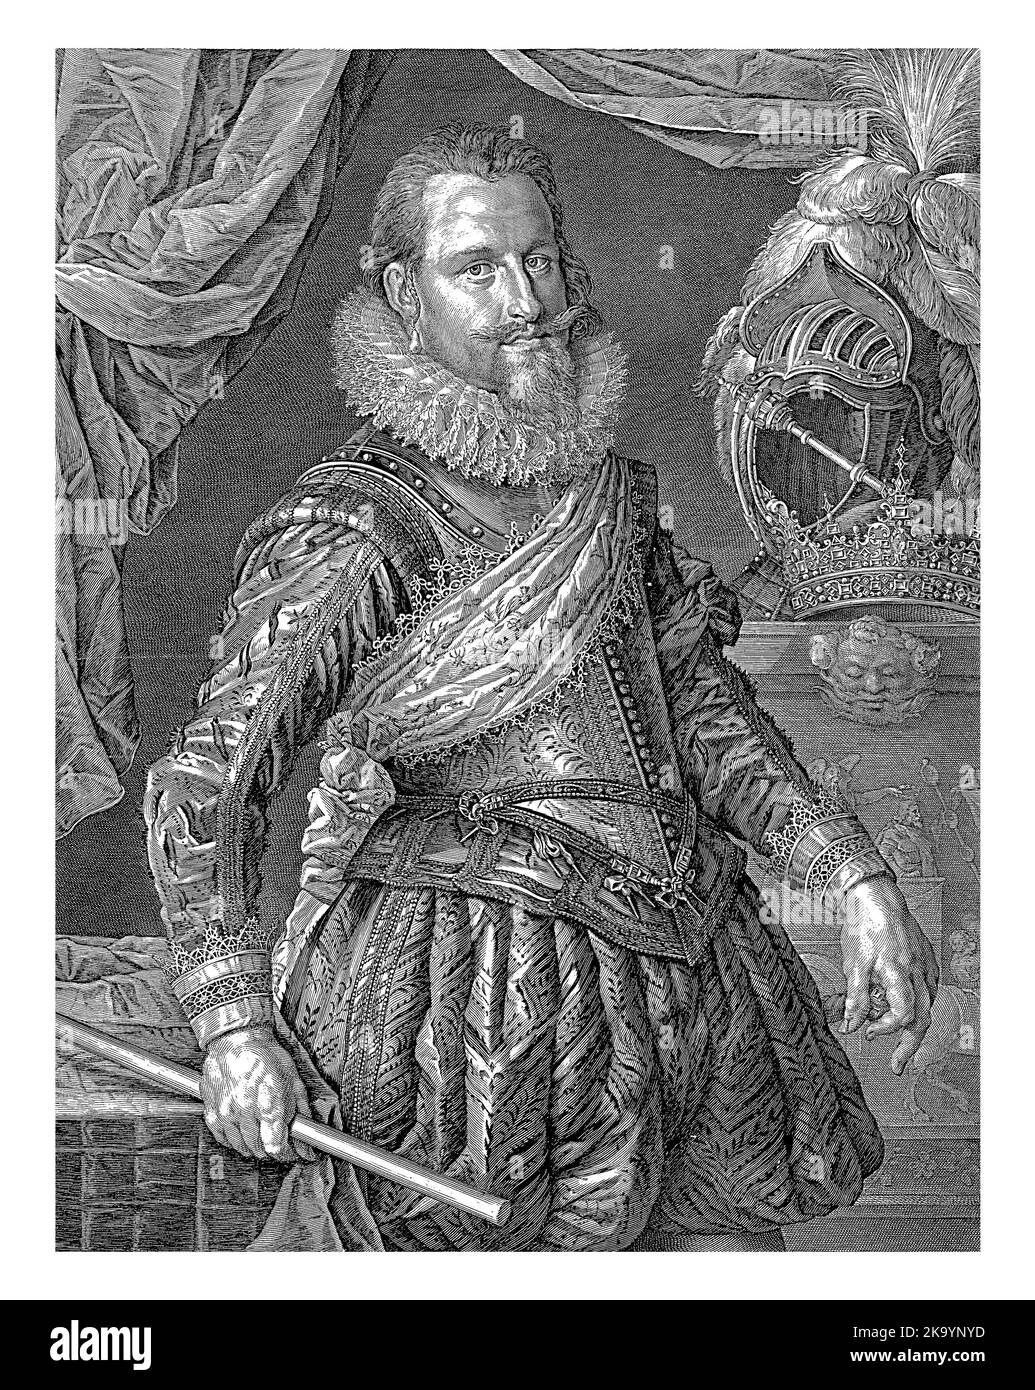 Porträt von König Christian IV. Von Dänemark und Norwegen, Jan Harmensz. Muller, nach Pieter Isaacsz., 1625 Porträt von Christian IV., König von Dänemark und N Stockfoto